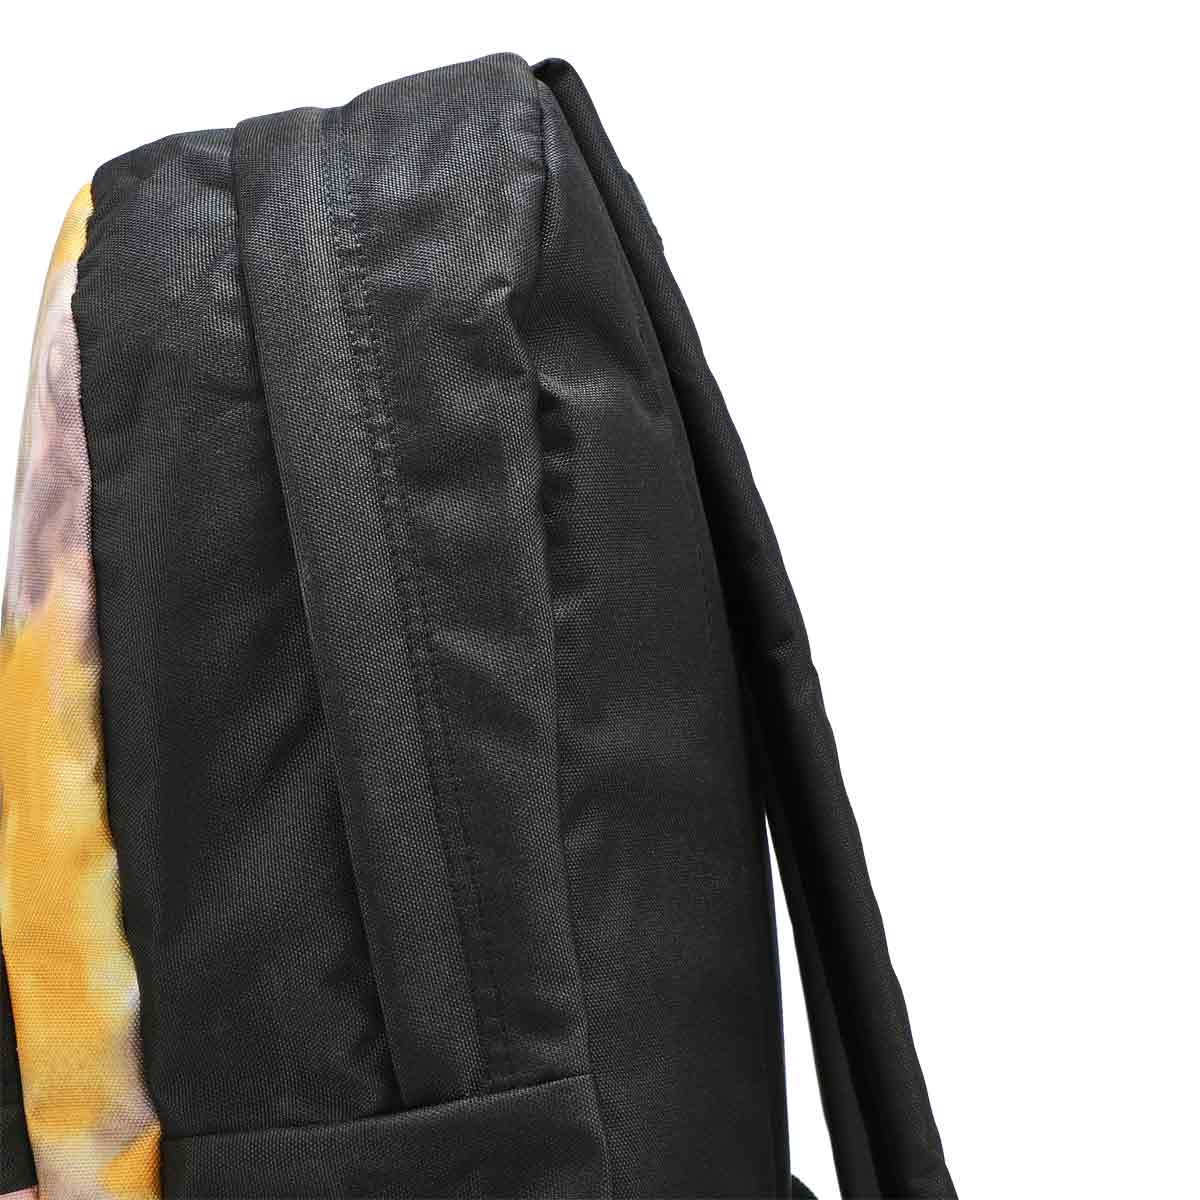 Vans Realm Backpack - Golden Tie Dye